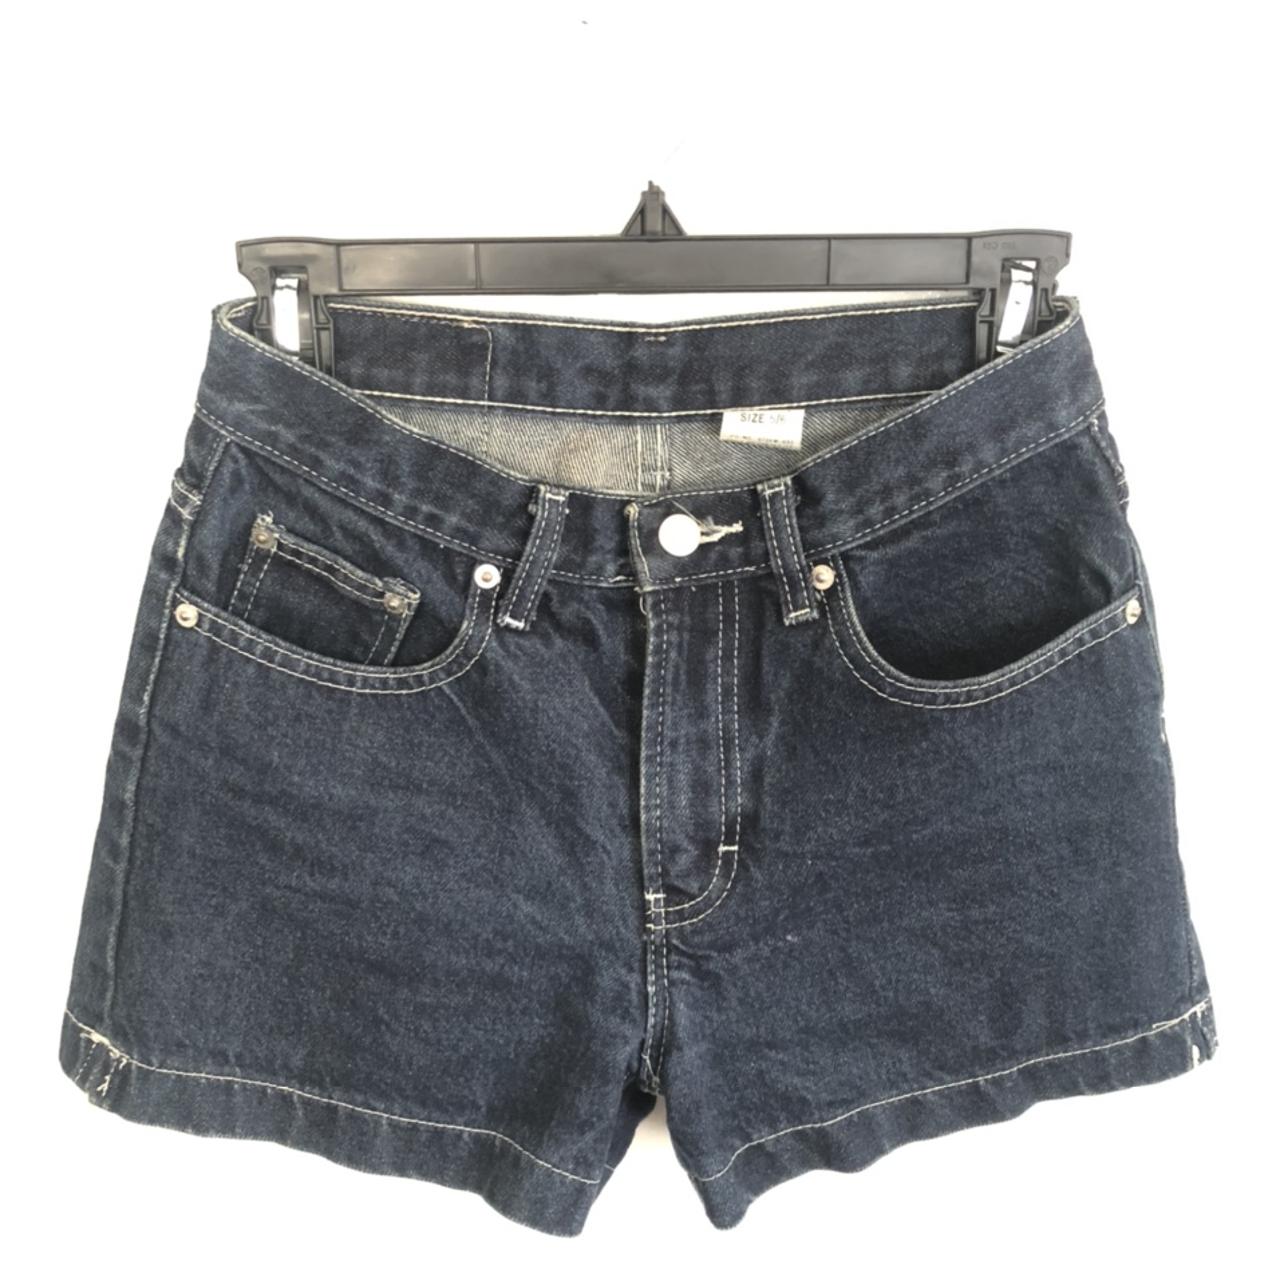 Authentic, vintage Jordache denim shorts. These are... - Depop